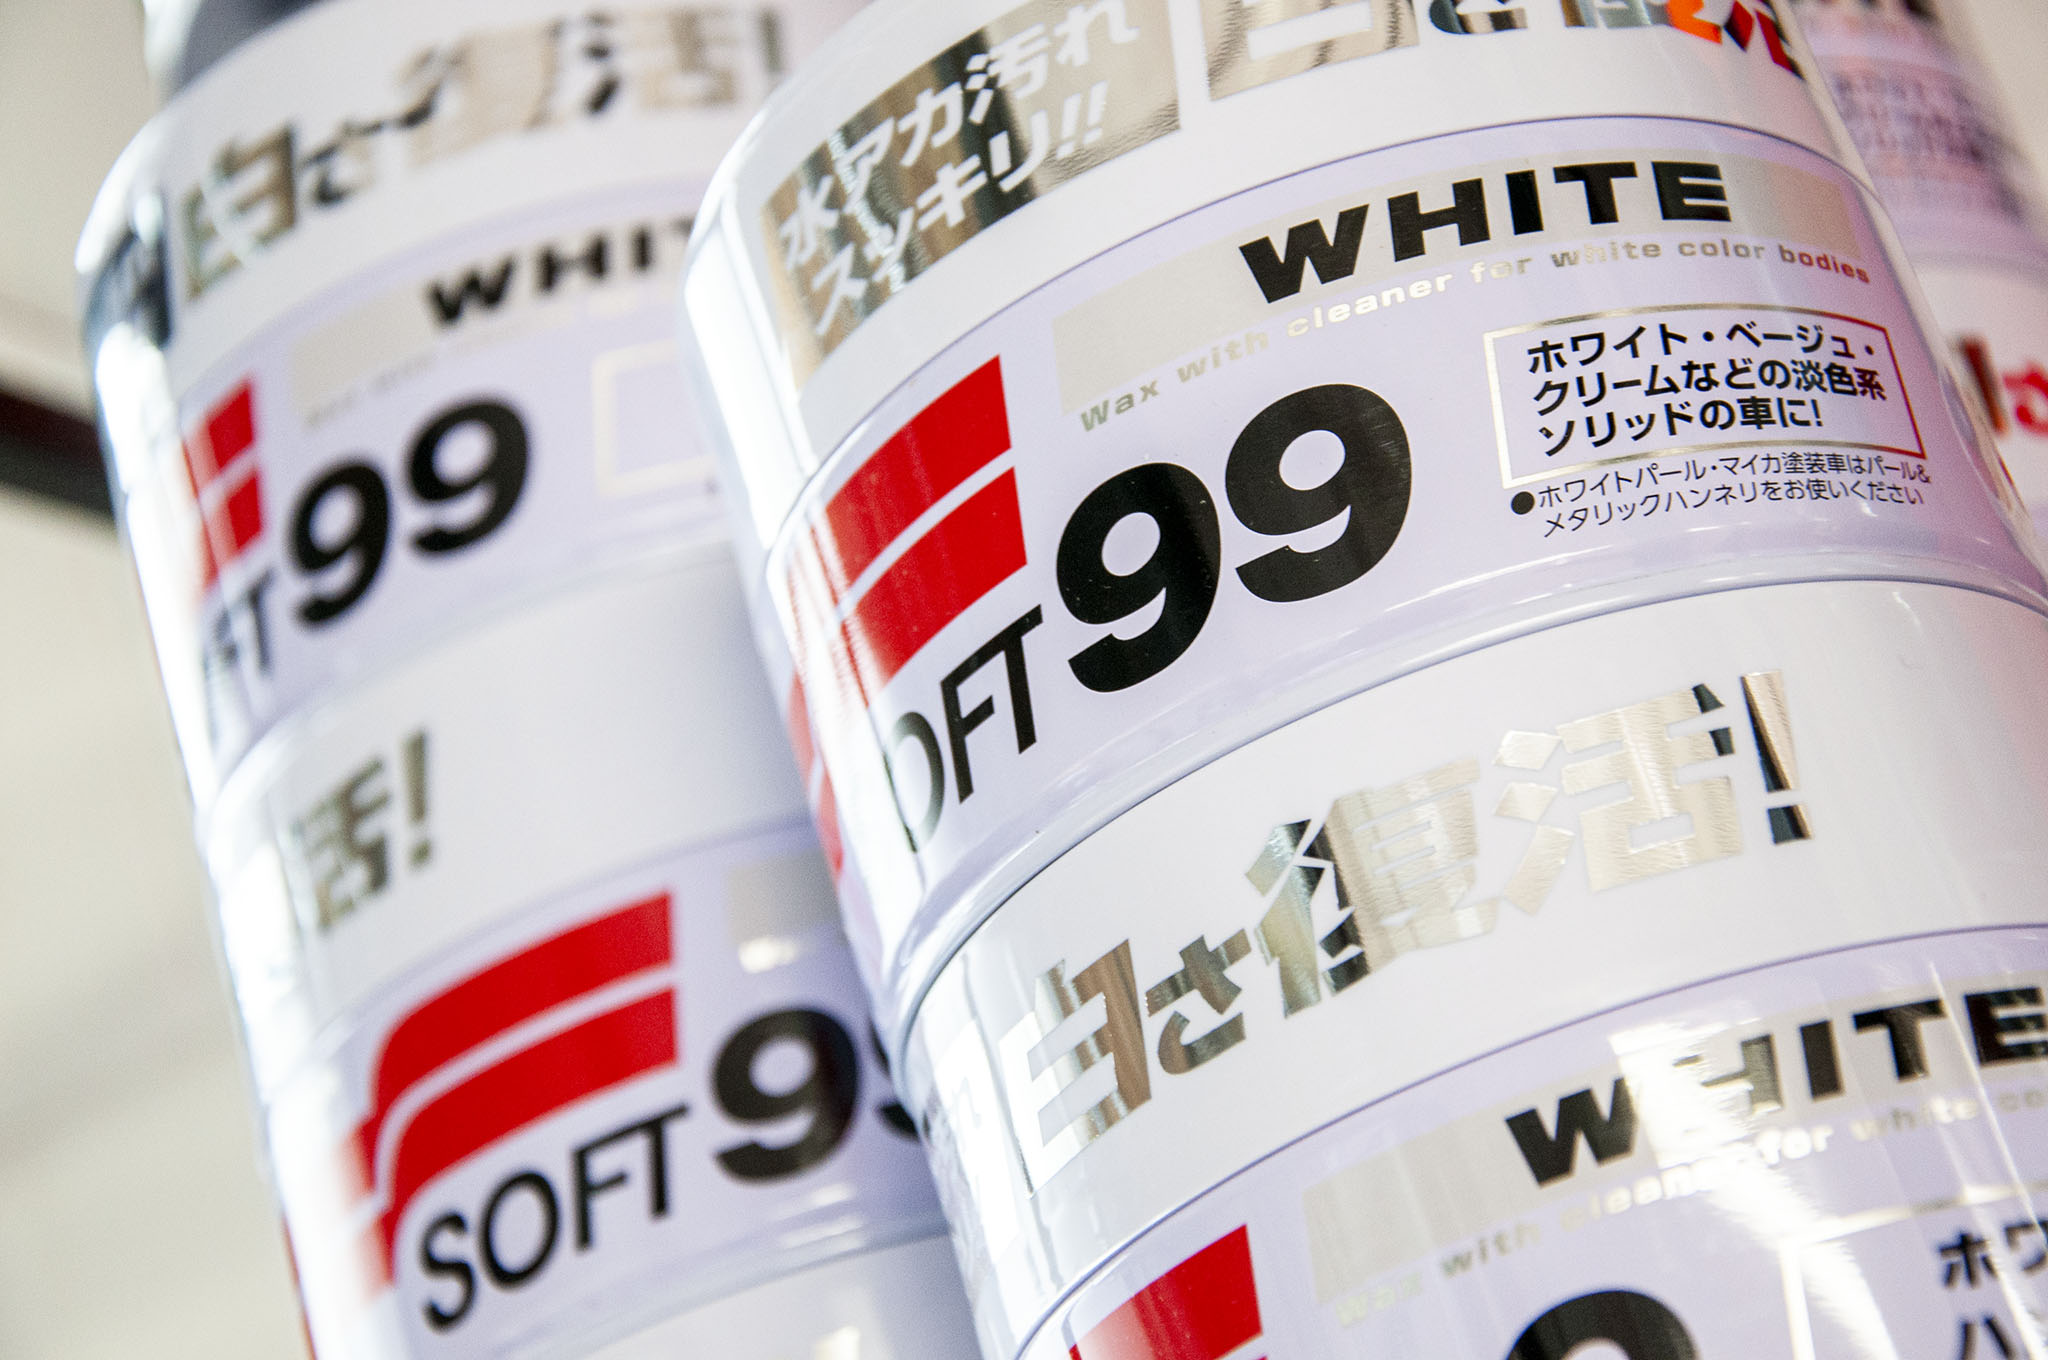 White Soft99 Wax, soft car wax, 350 g 6